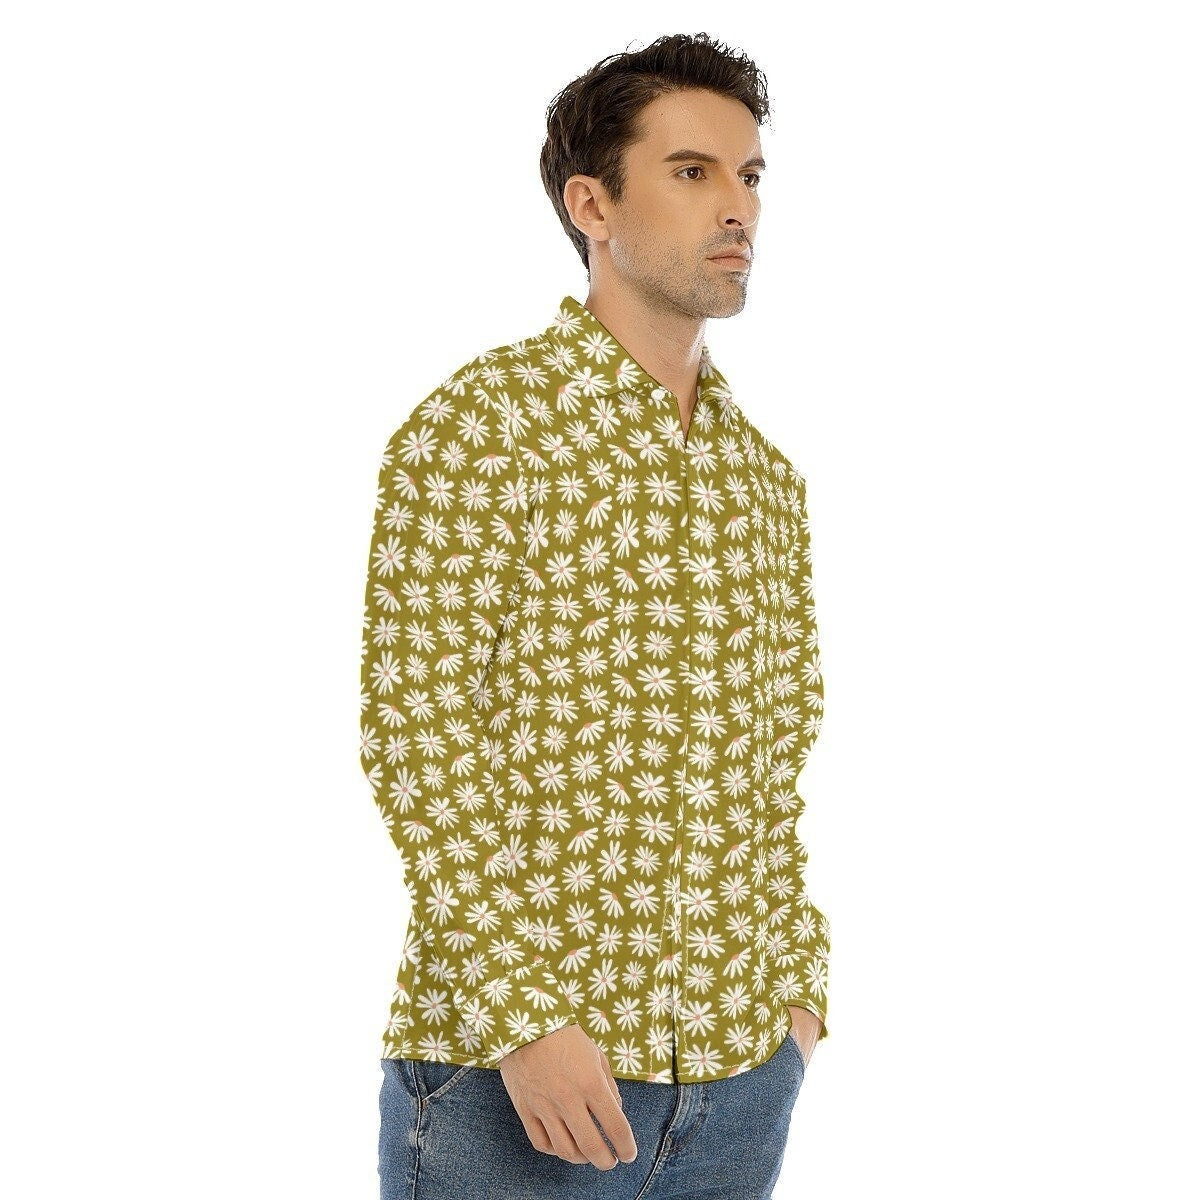 Vintage-Shirt im 70er-Jahre-Stil, grünes Blumenhemd für Herren, 70er-Jahre-Kleidung für Herren, Retro-Shirt für Herren, Hippie-Shirt für Herren, 70er-Shirt für Herren, 70er-Jahre-inspiriertes Hemd